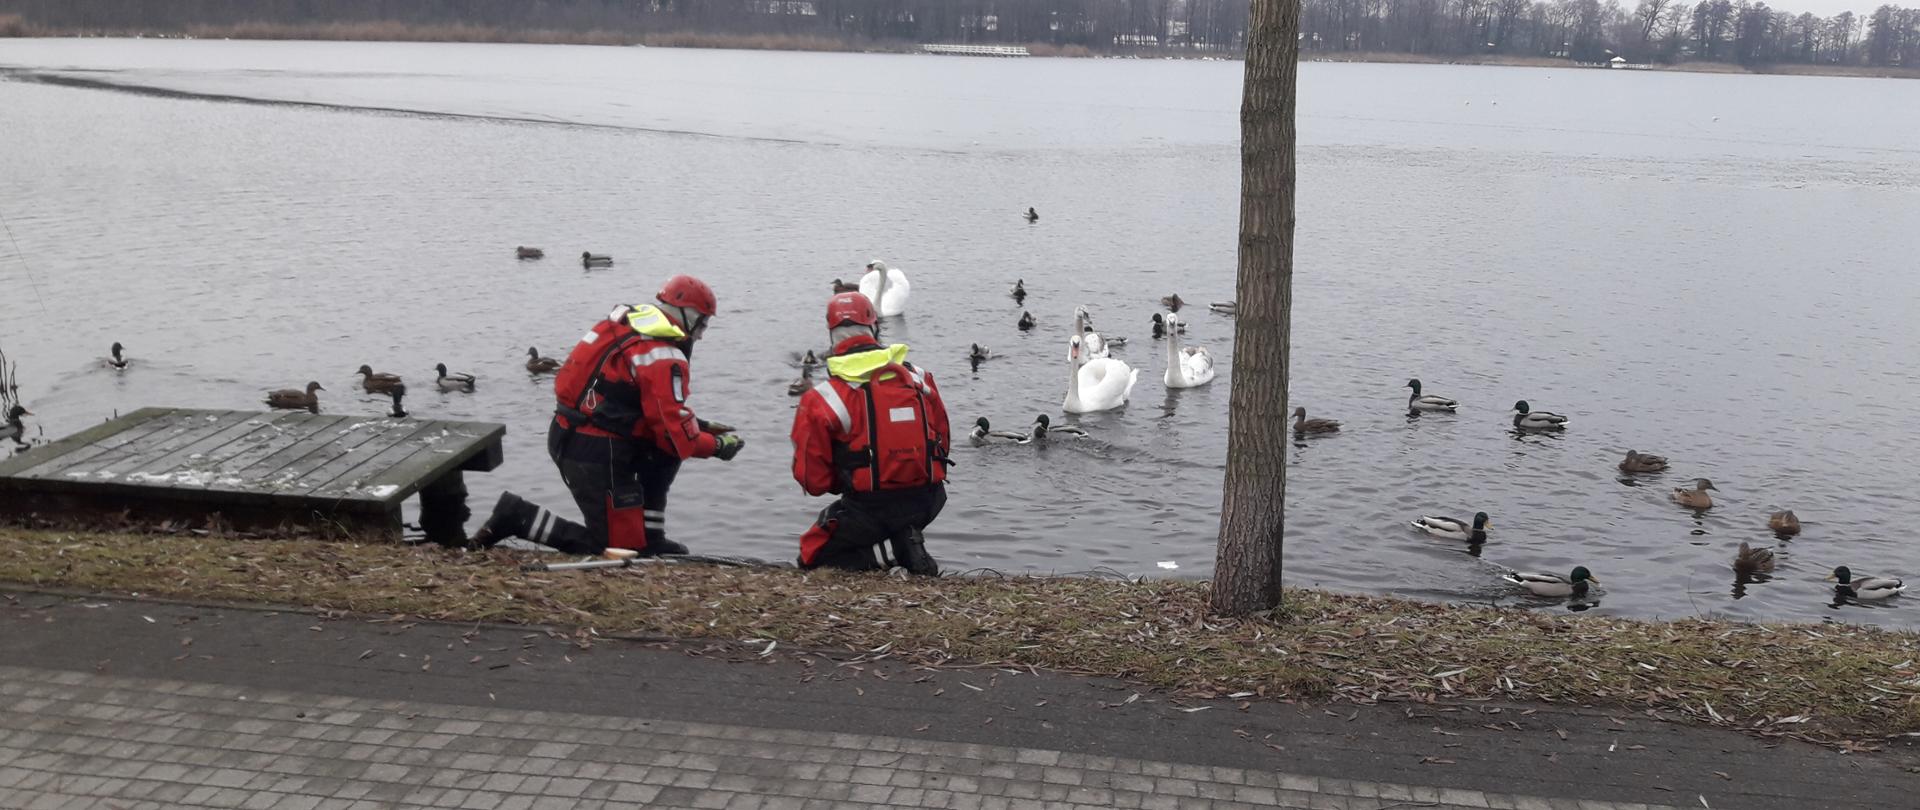 Dwóch strażaków w kombinezonach na brzegu jeziora próbuje złapać rannego łabędzia. W tle inne ptaki.